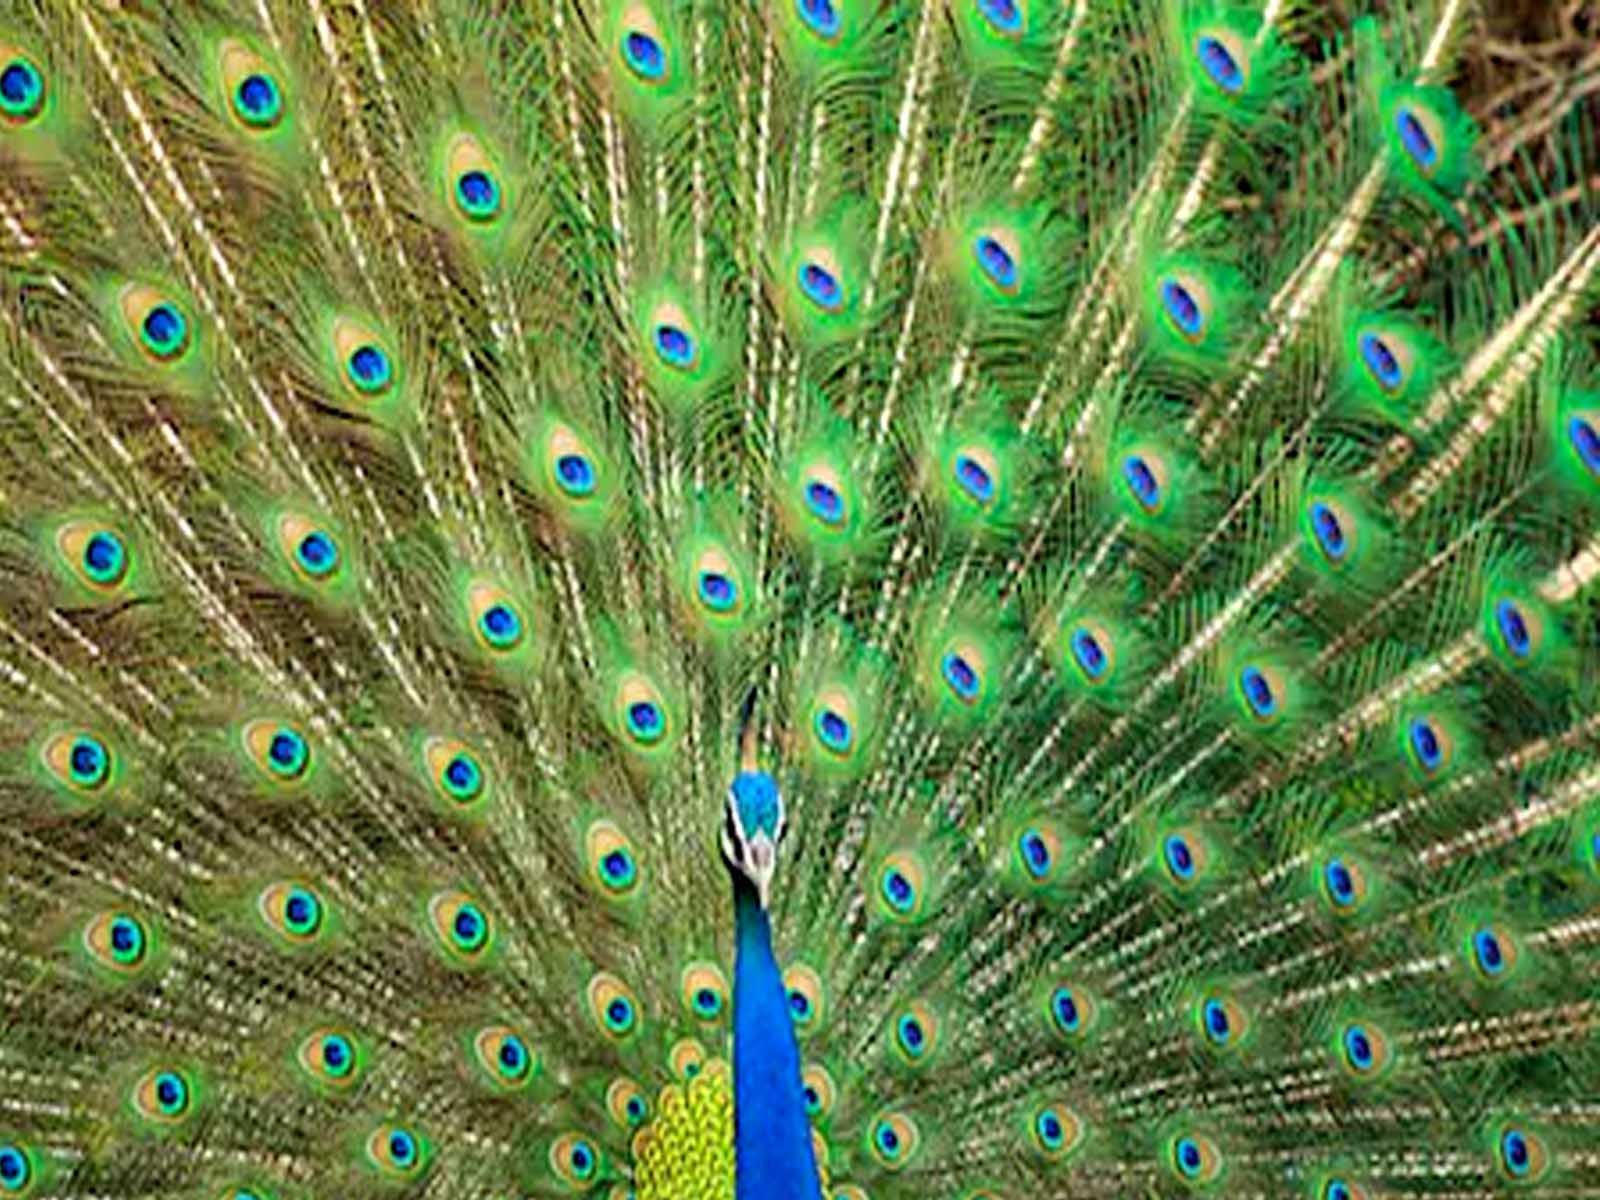 Peacock In Dream: ਸੁਪਨੇ 'ਚ ਦਿਖਣ ਮੋਰ ਤਾਂ ਬਦਲ ਸਕਦੀ ਹੈ ਤੁਹਾਡੀ ਕਿਸਮਤ, ਜਾਣੋ ਕੀ ਹੋਵੇਗਾ ਸ਼ੁਭ ?